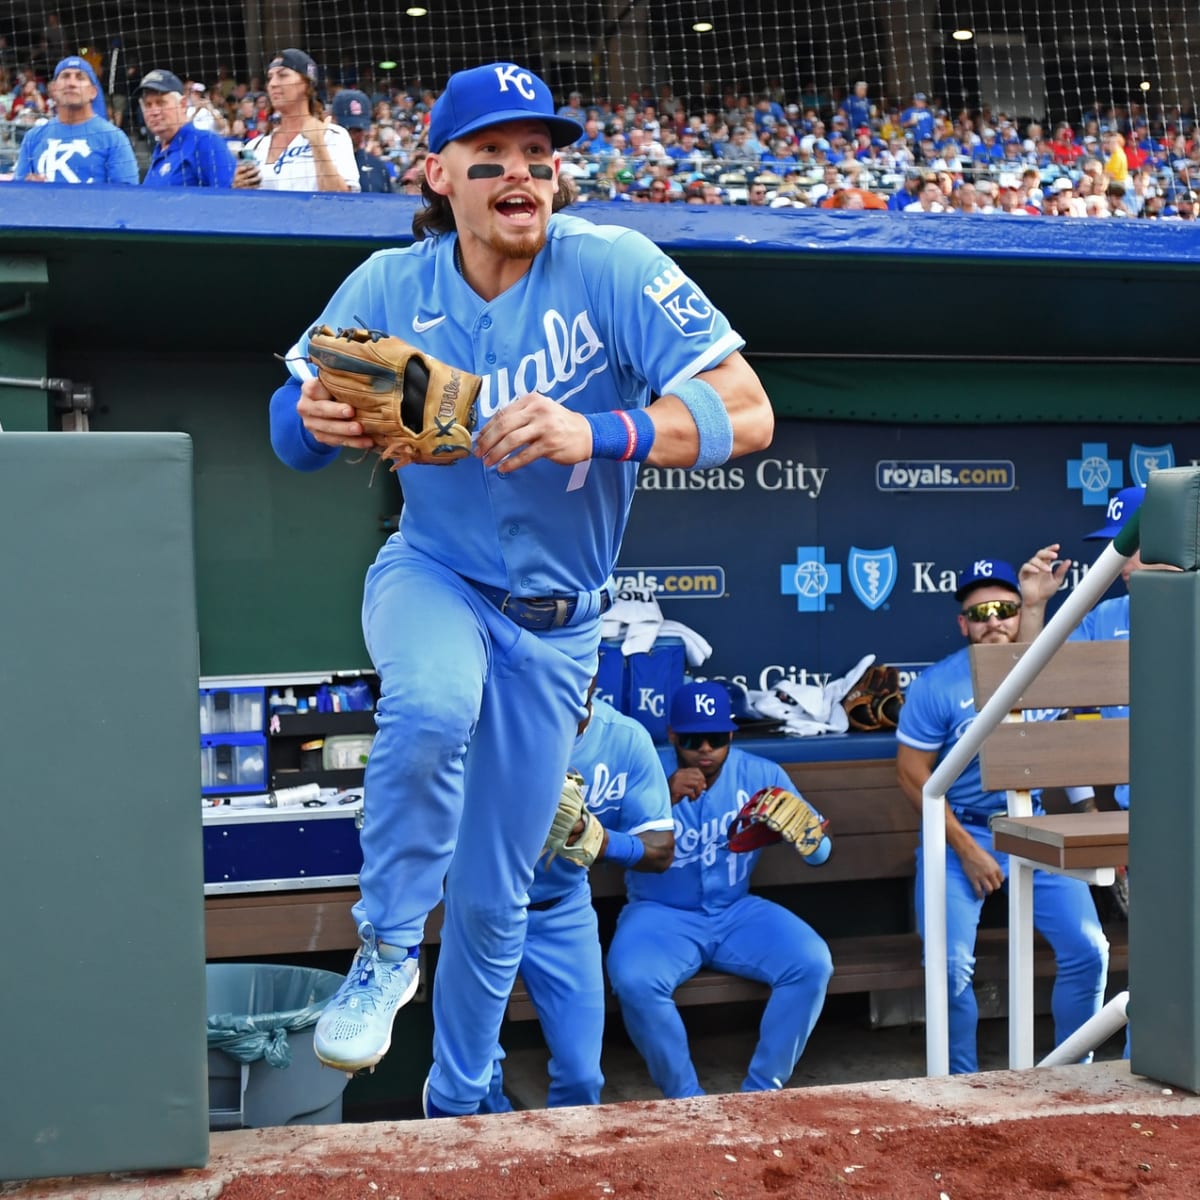 Royals powder blue uniforms shine, but bats go quiet against Twins